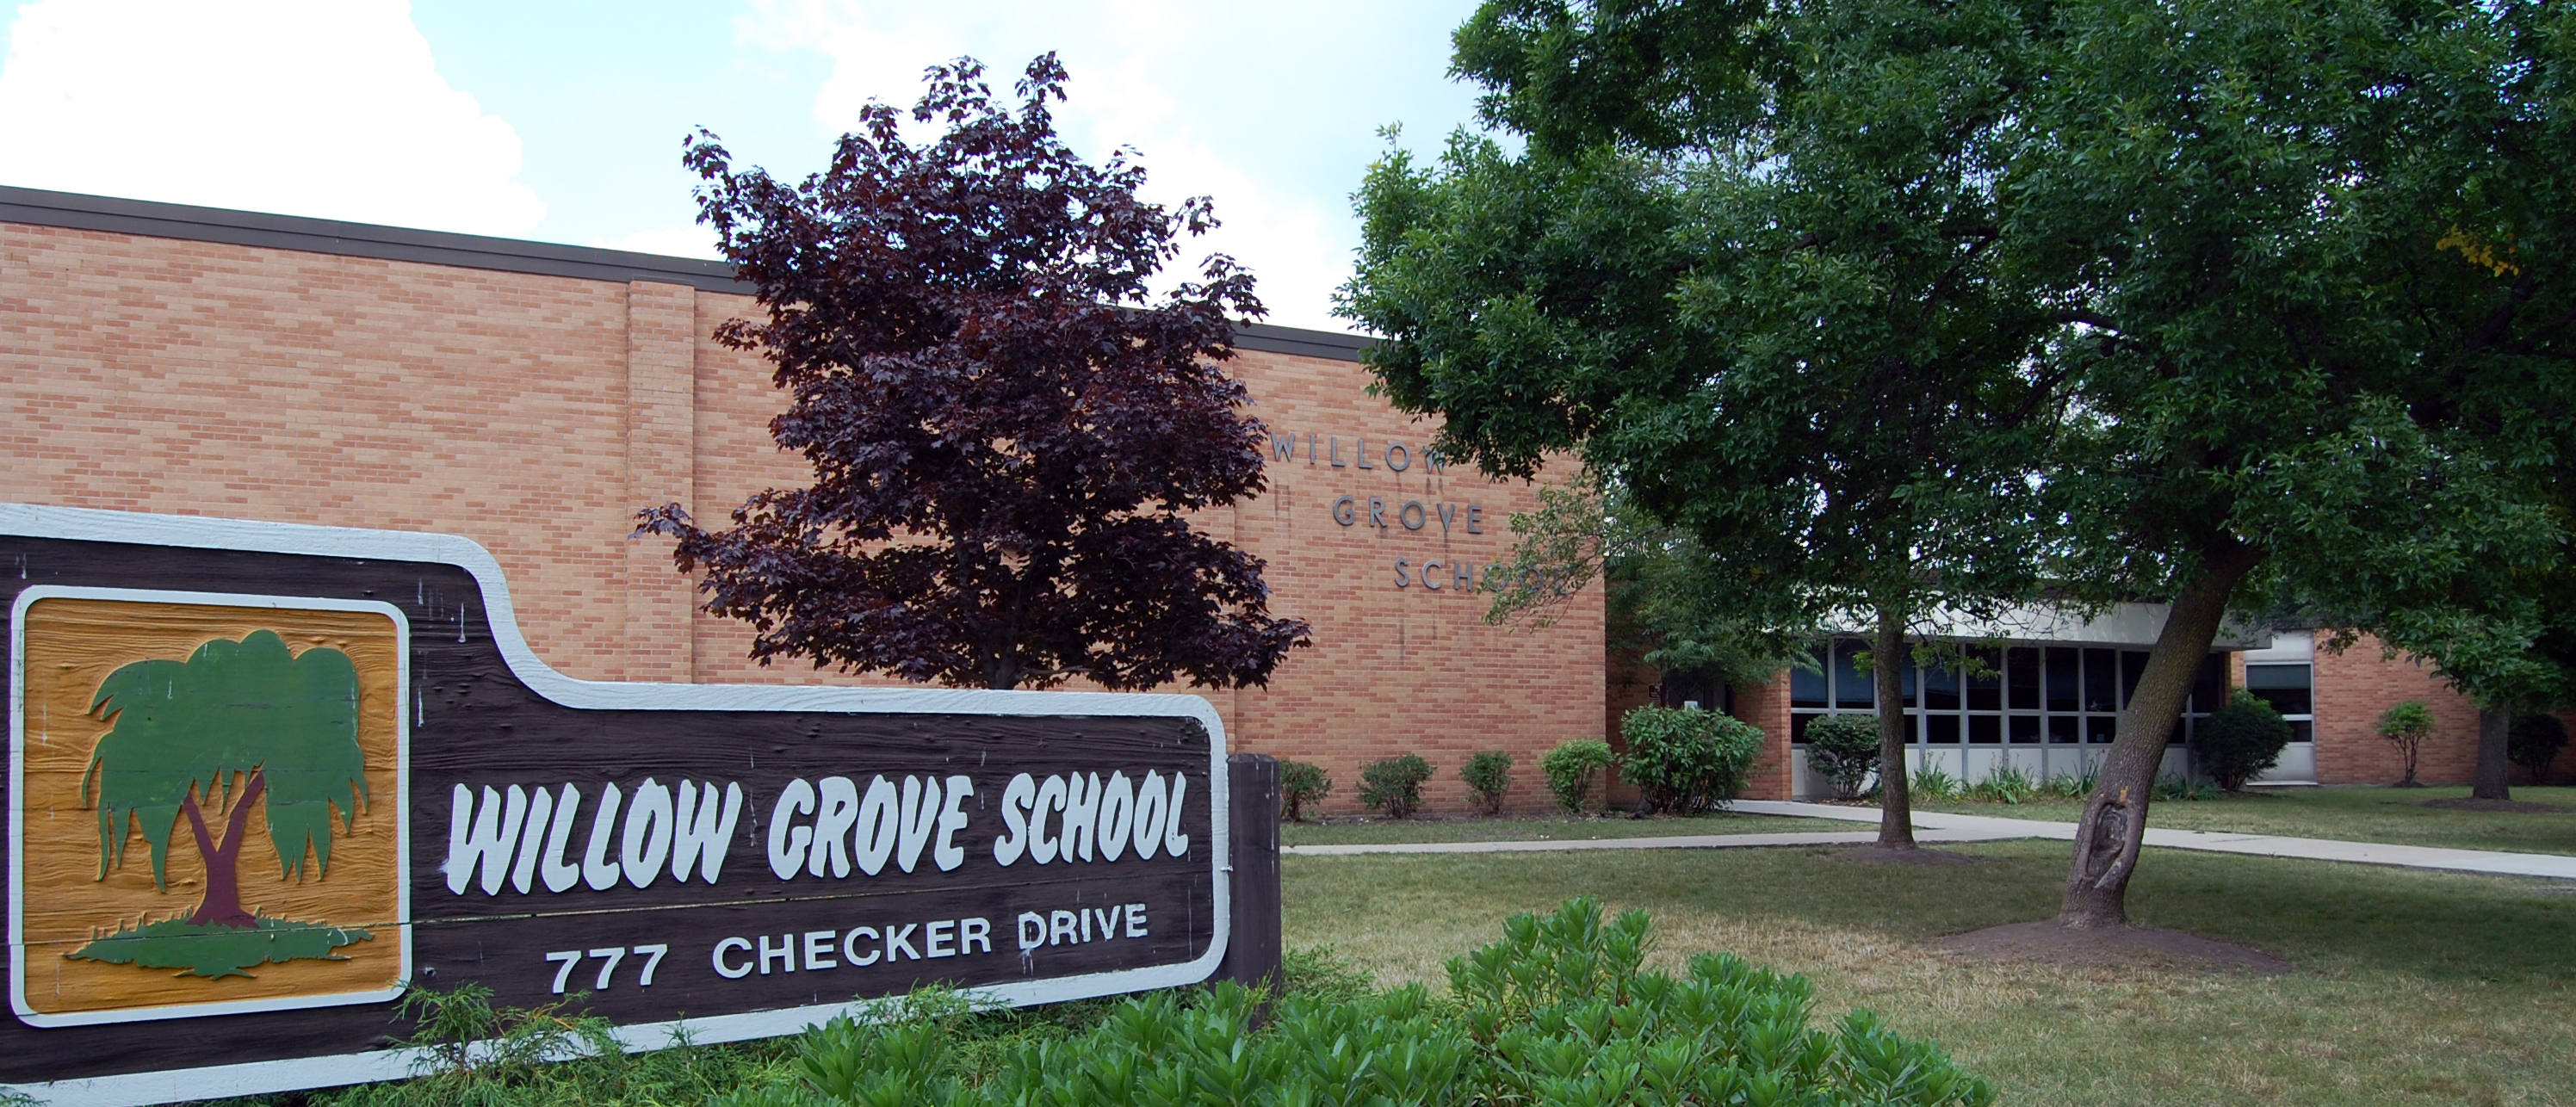 Willow Grove School Building